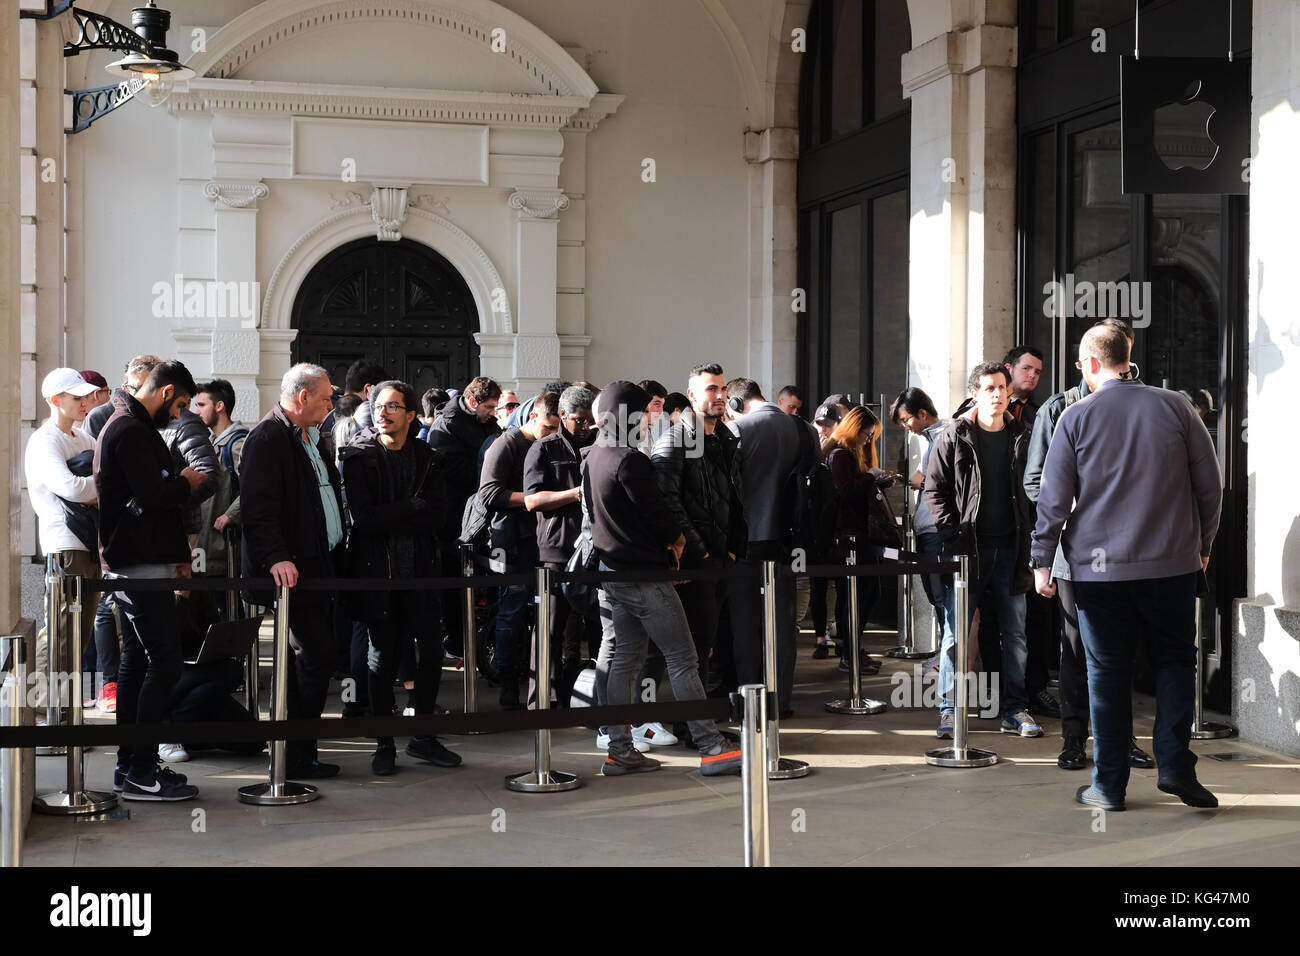 Covent Garden, Londres, Royaume-Uni. 3rd novembre 2017. L'un des magasins phares d'Apples dans le Covent Garden de Londres a eu des files d'attente toute la journée, avec des barrières contre les accidents érigées et la sécurité à portée de main alors que le nouvel iPhone X est lancé et atteint les rues novembre 3rd 2017 crédit: Nigel Bowles/Alay Live News Banque D'Images